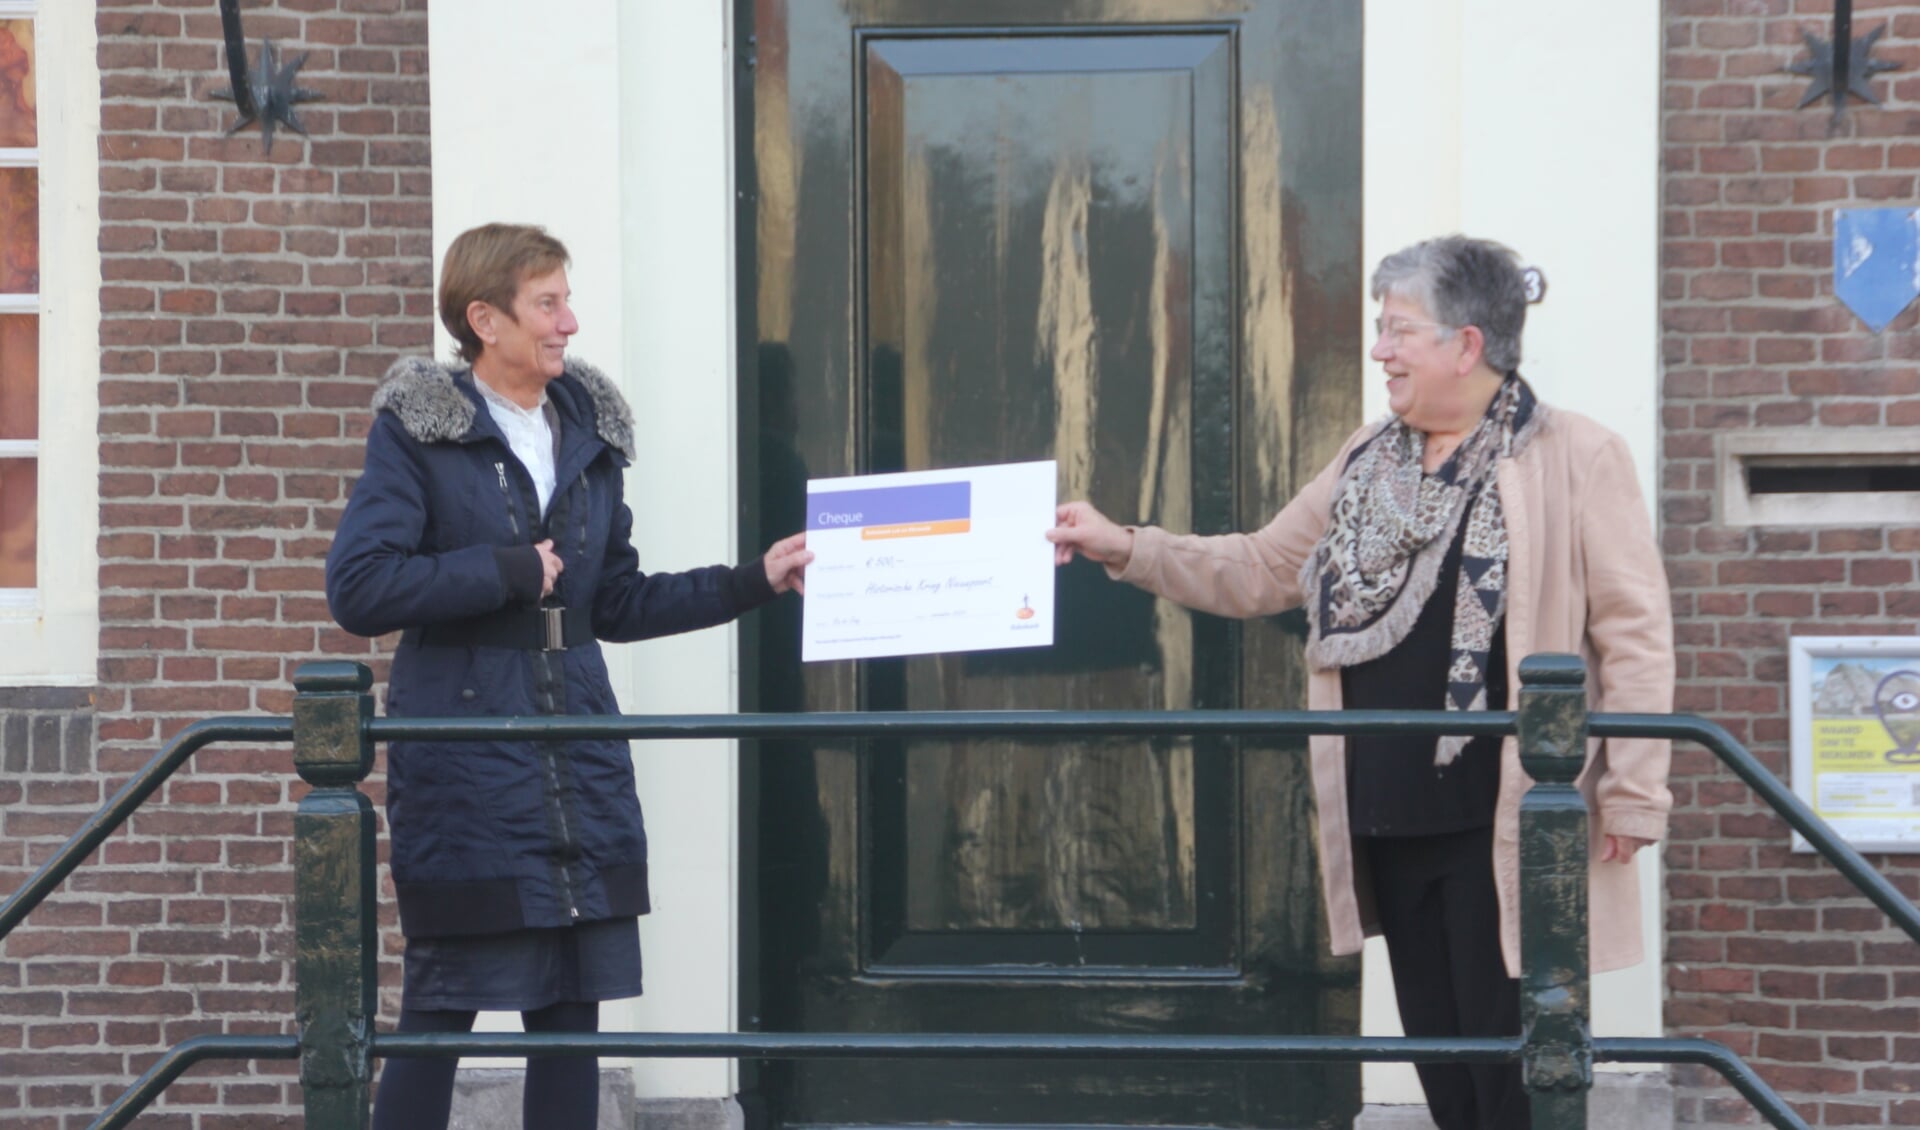 Ria de Jong-Pek overhandigt de cheque aan Adrie den Hartog